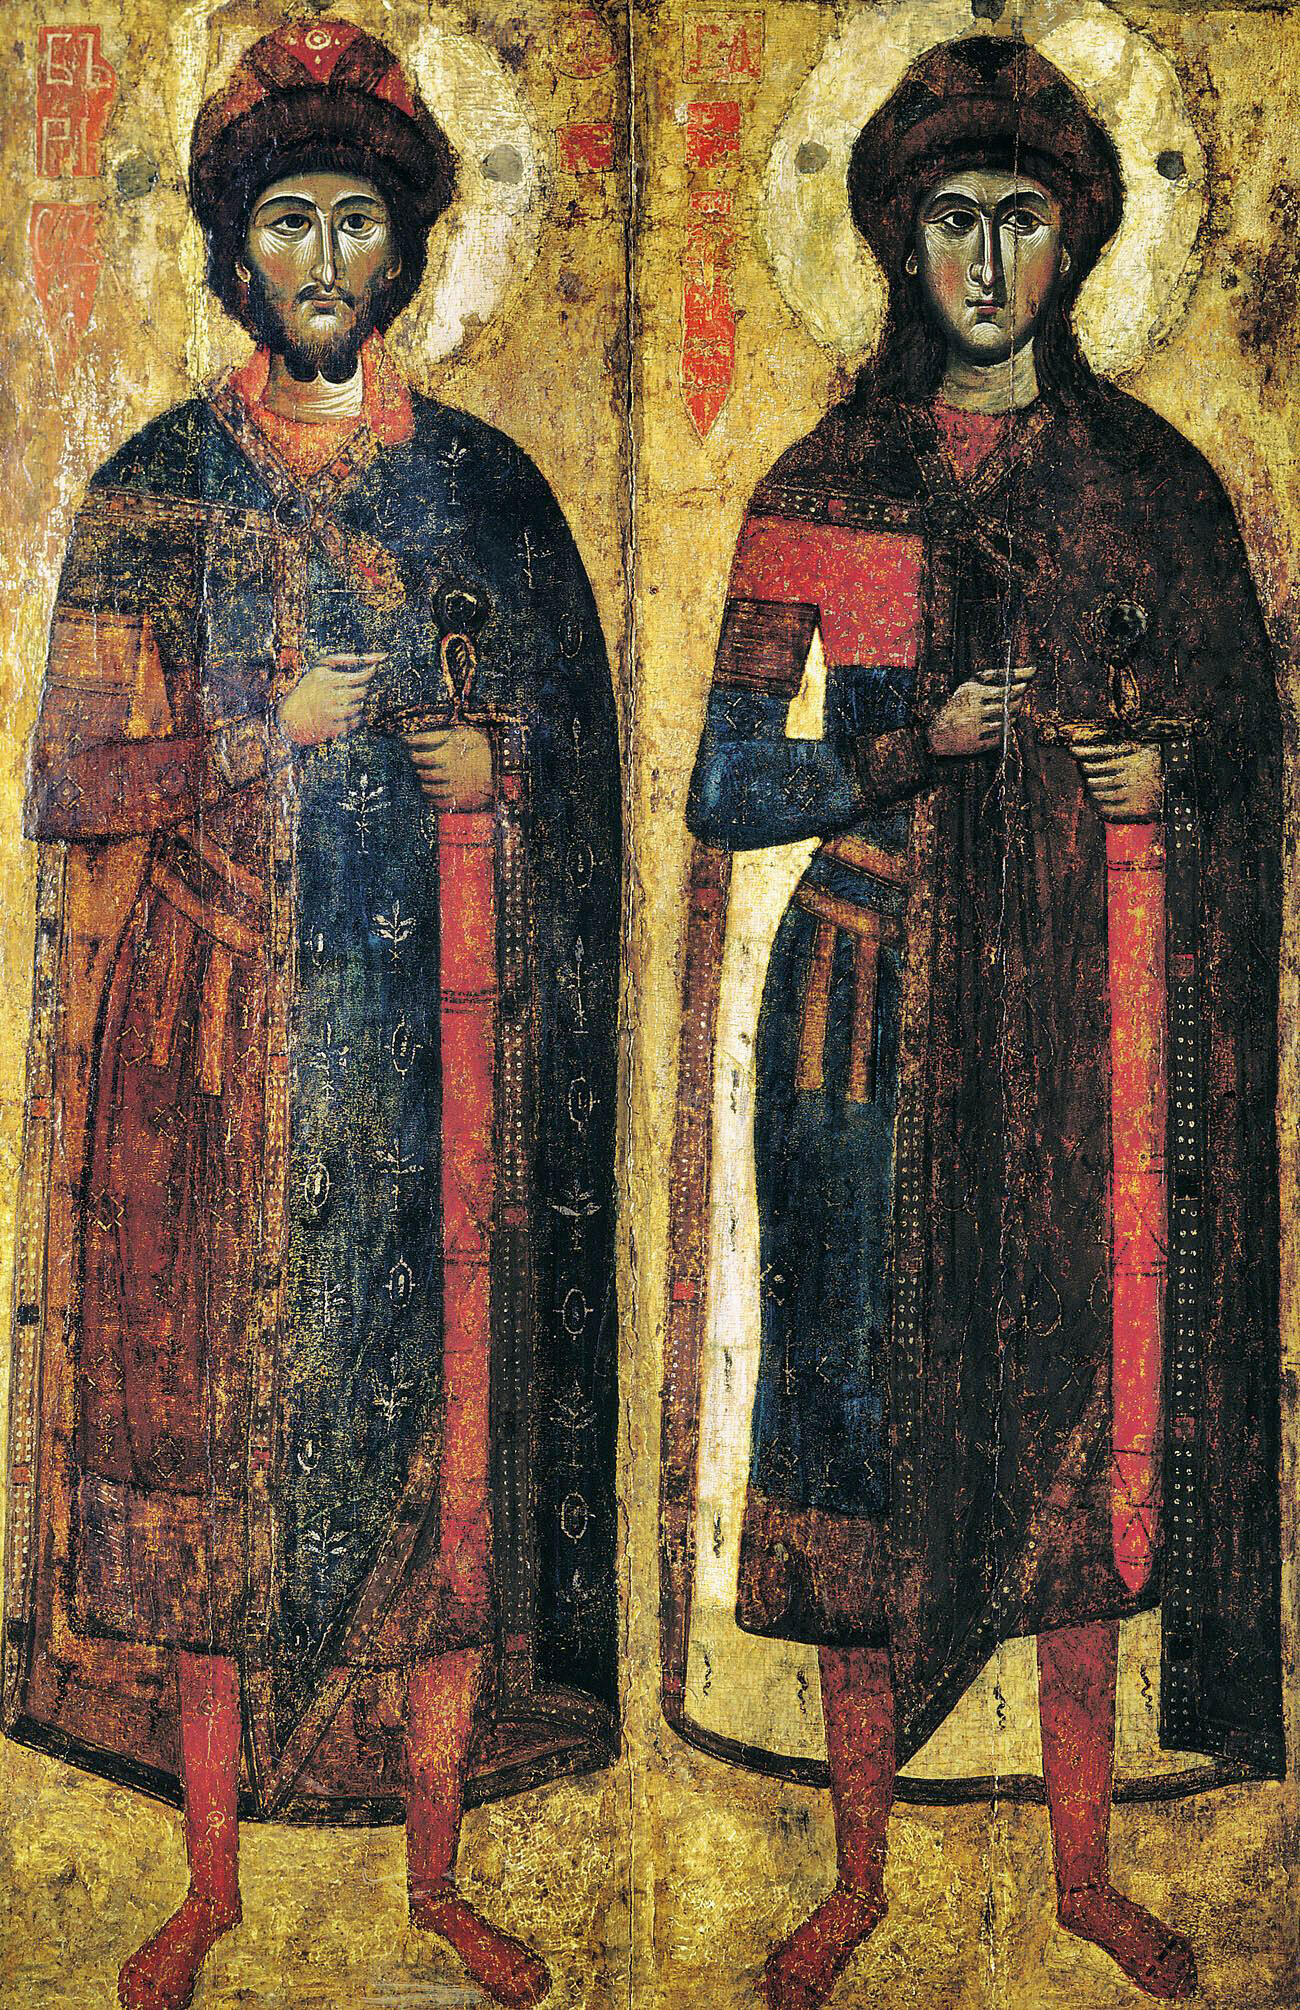 Св. Борис и Глеб, една од најстарите икони во Русија најдена во Новгород и веројатно насликана во Твер околу 1300 година.

